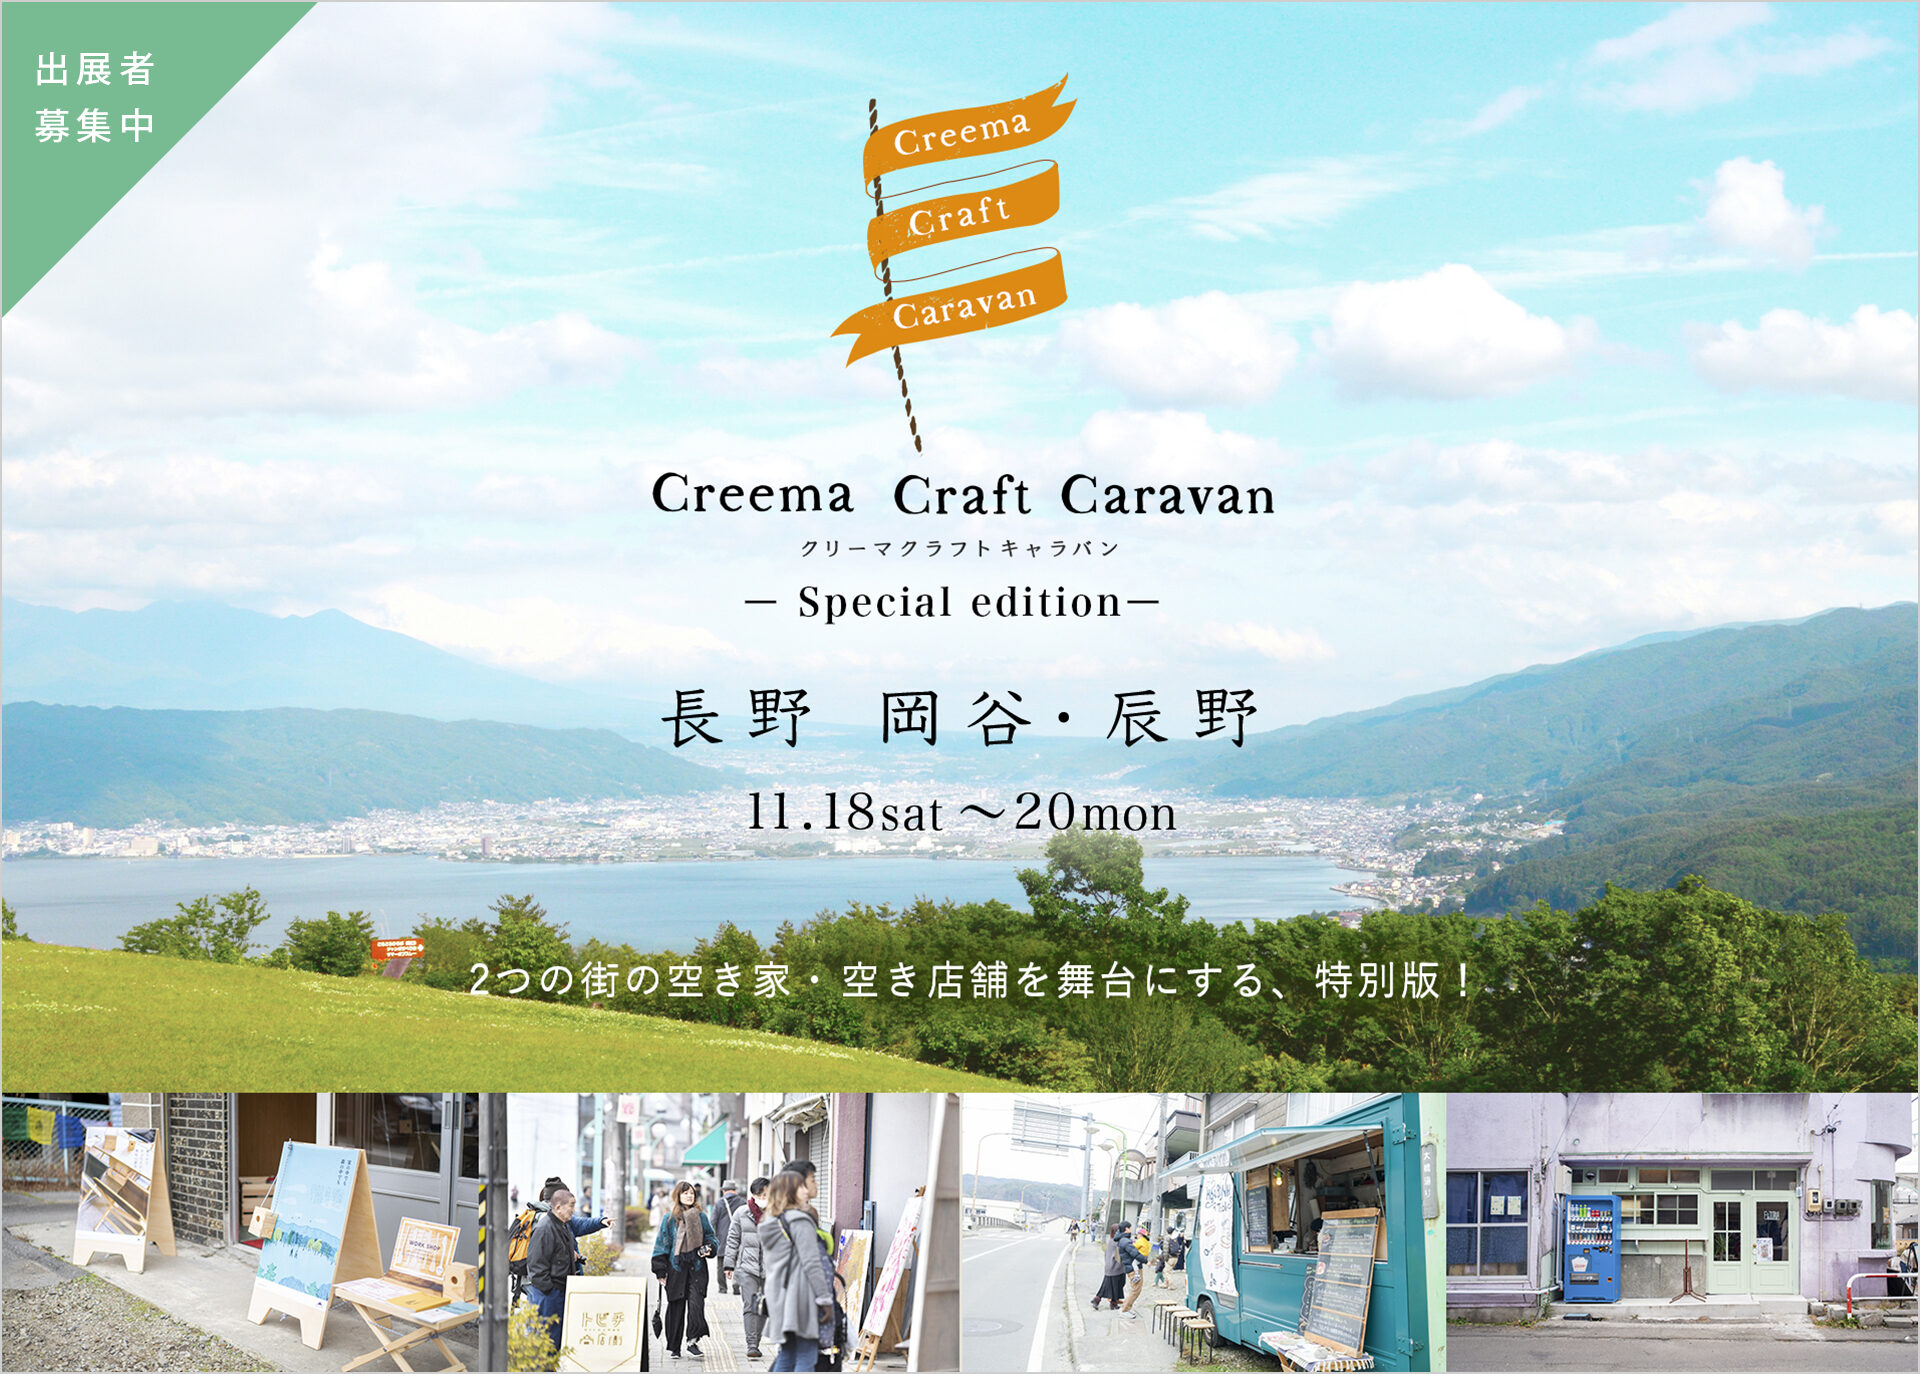 \\「Creema Craft Caravan」が長野にやって来る！出展クリエイターを募集中！！//